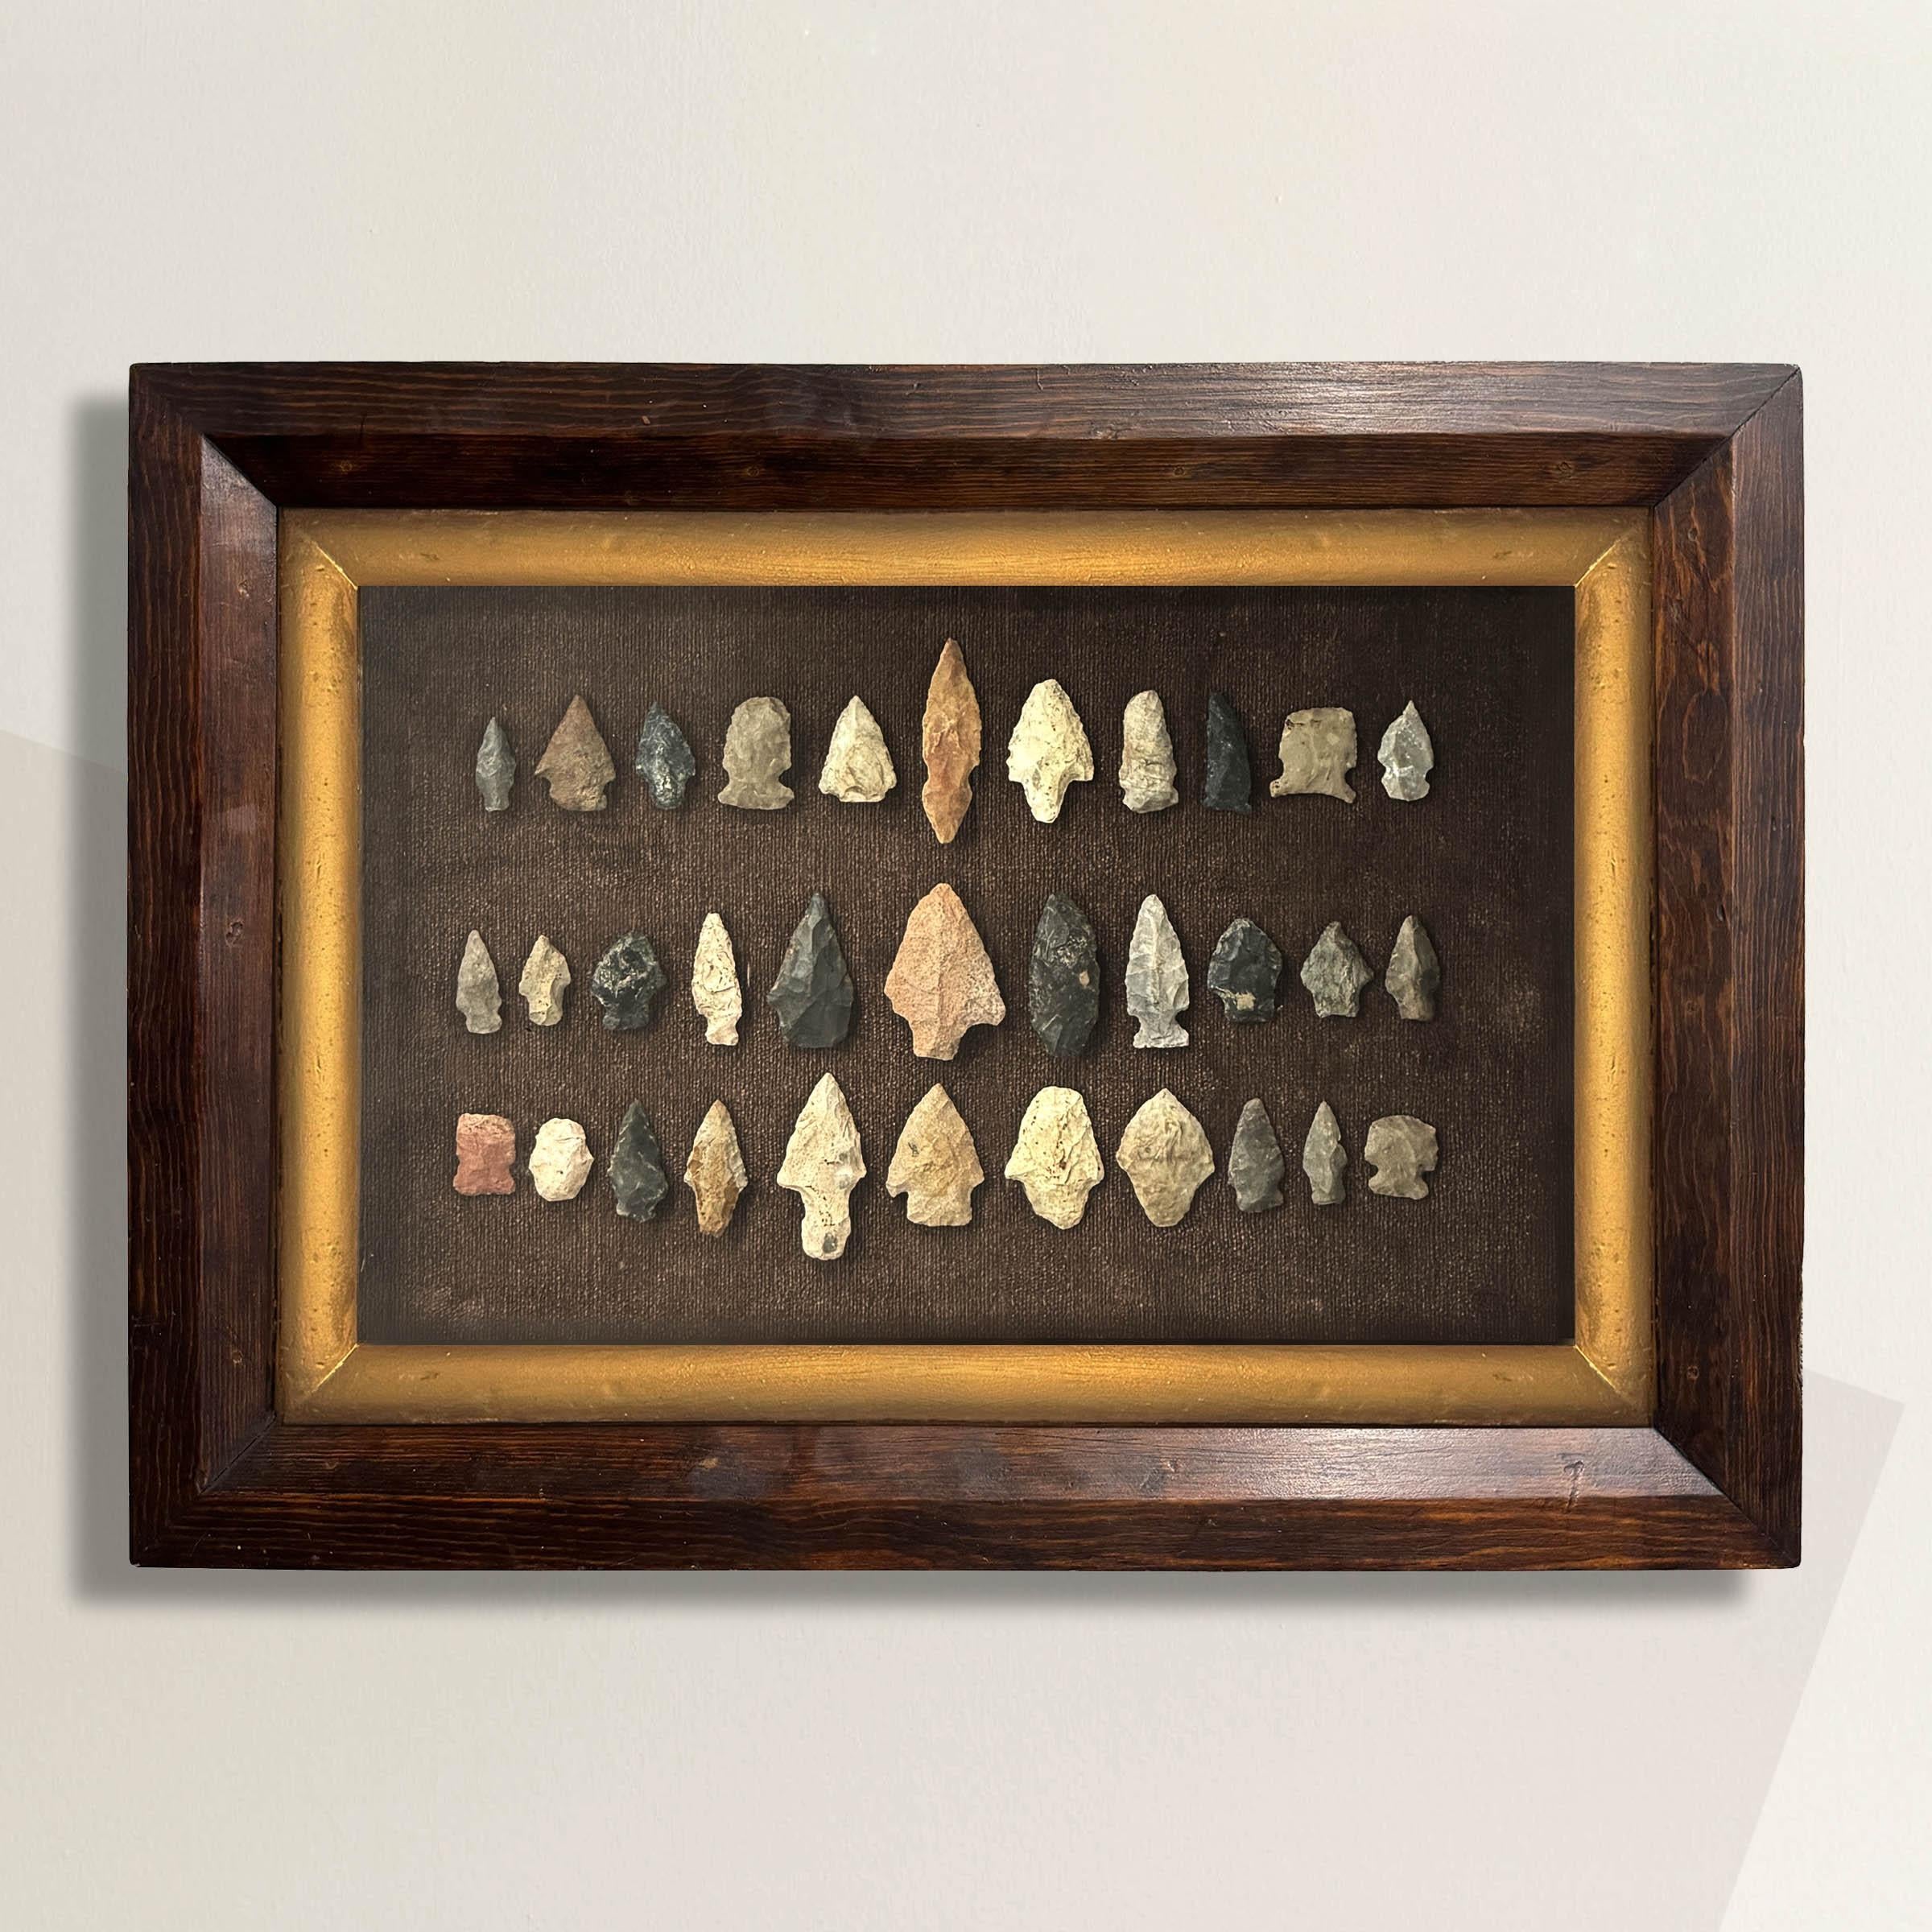 Cette Collectional de 33 pointes de flèches amérindiennes trouvées dans le comté de Waukesha, dans le Wisconsin, offre un aperçu de la riche histoire indigène de la région. Encadrés dans un cadre du XIXe siècle avec un filet d'or, ces objets